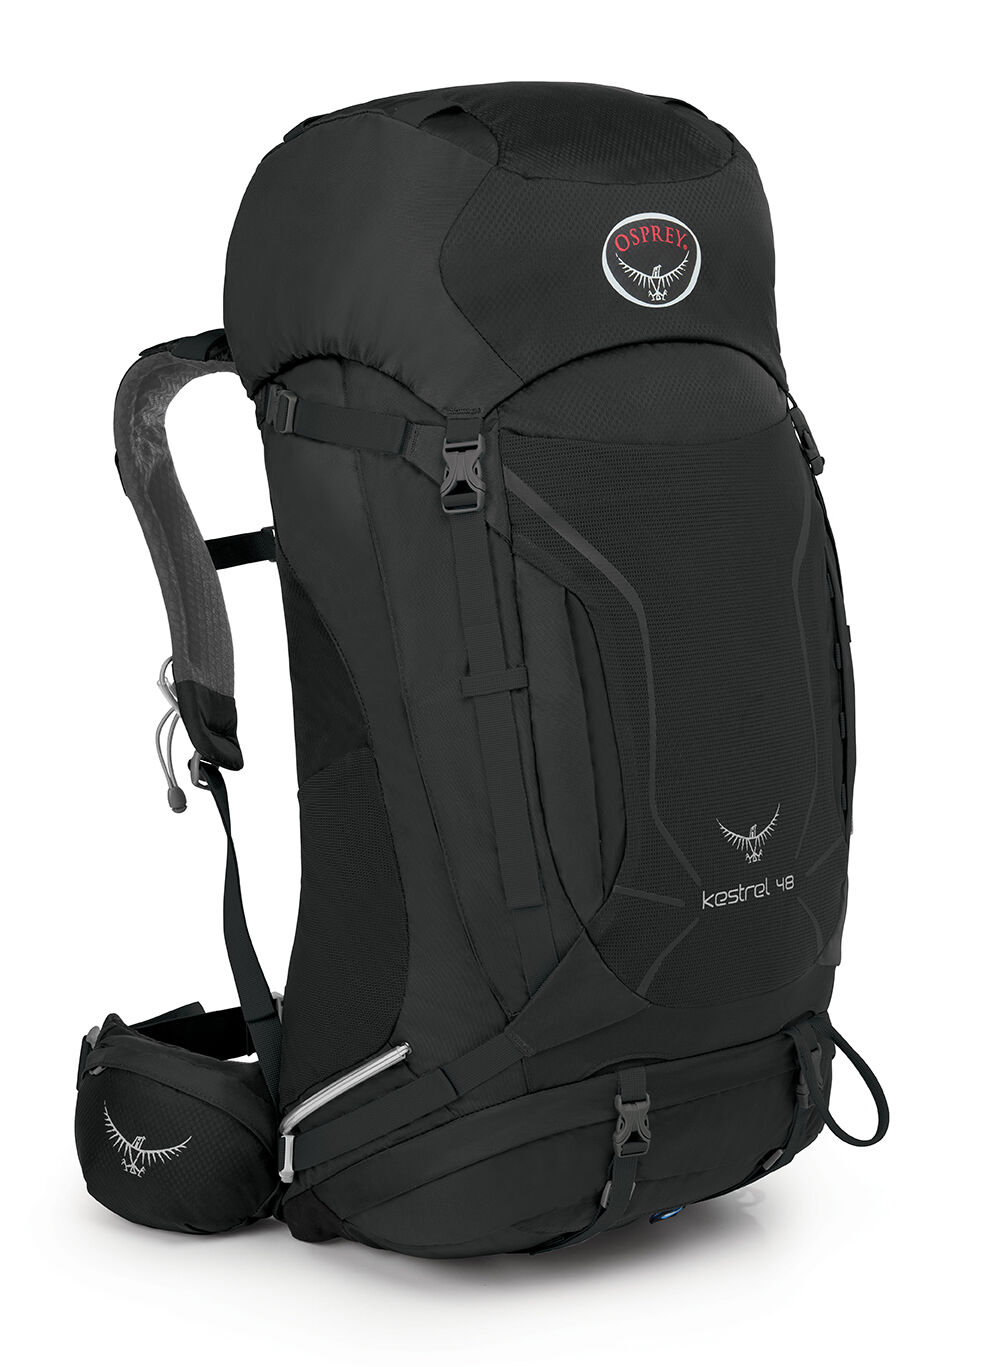 Osprey - Kestrel 48 - Trekking backpack - Men's